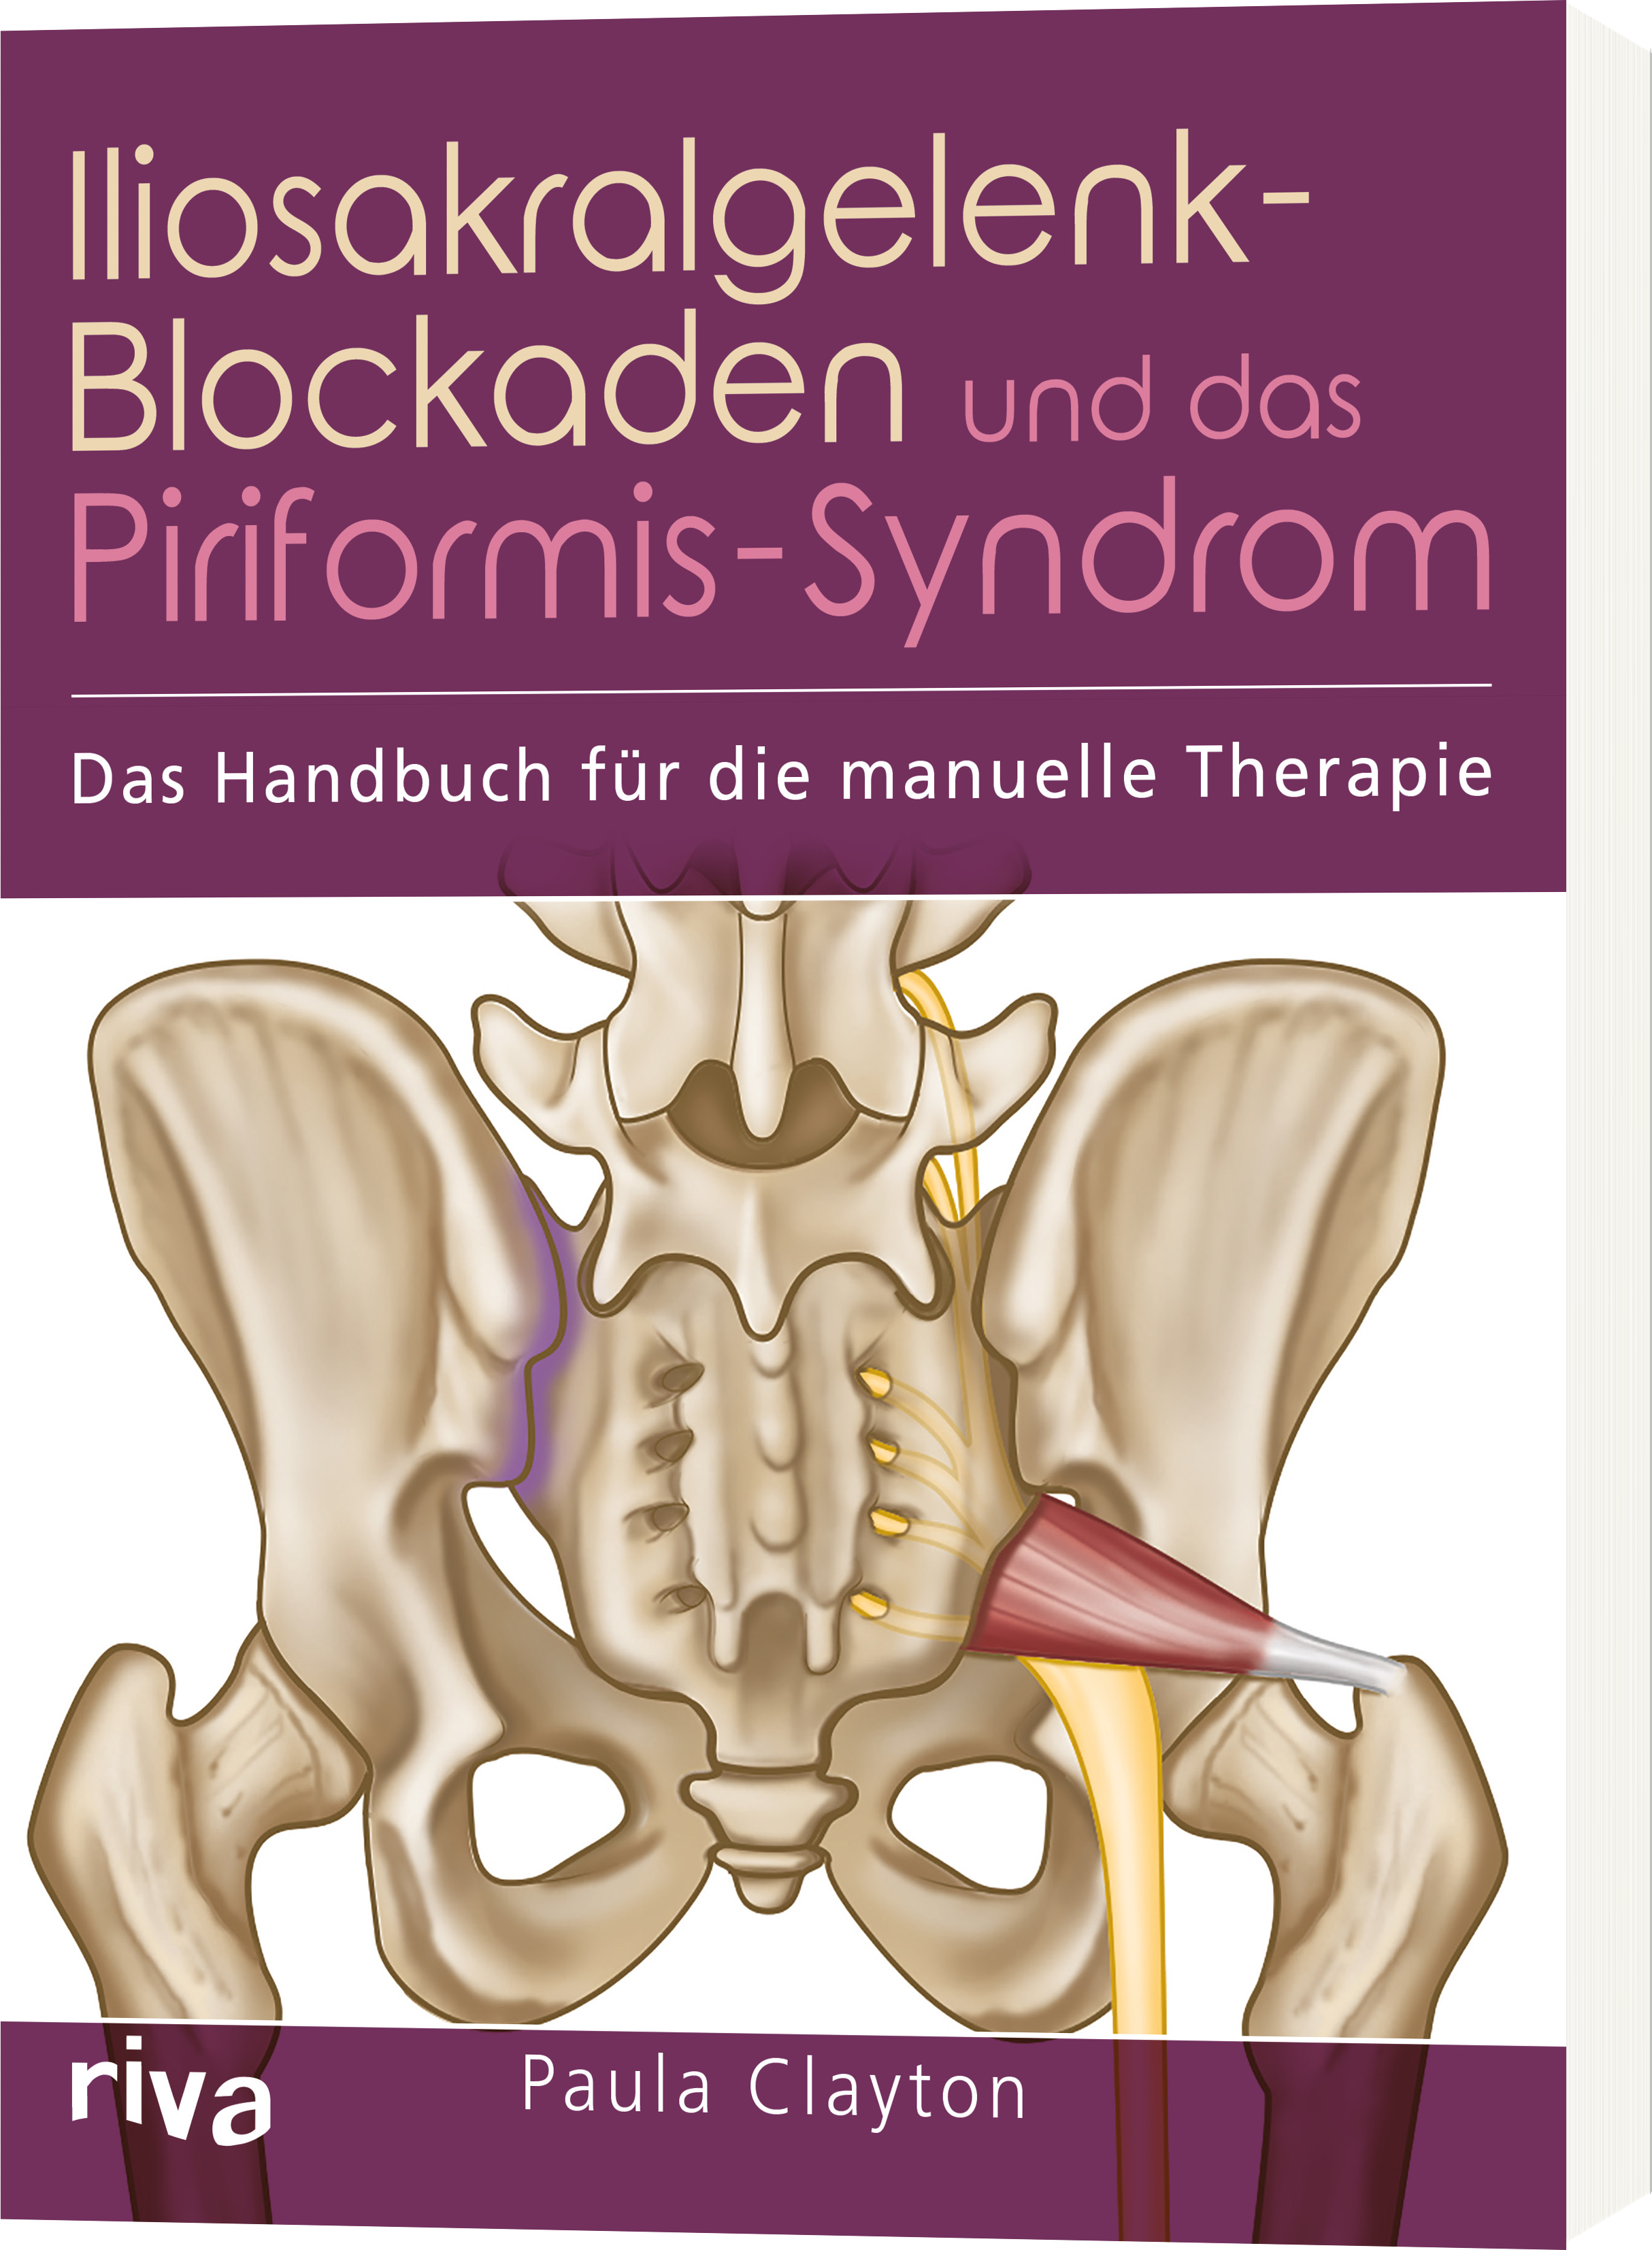 Iliosakralgelenk-Blockaden und das Piriformis-Syndrom - Das Handbuch für die manuelle Therapie